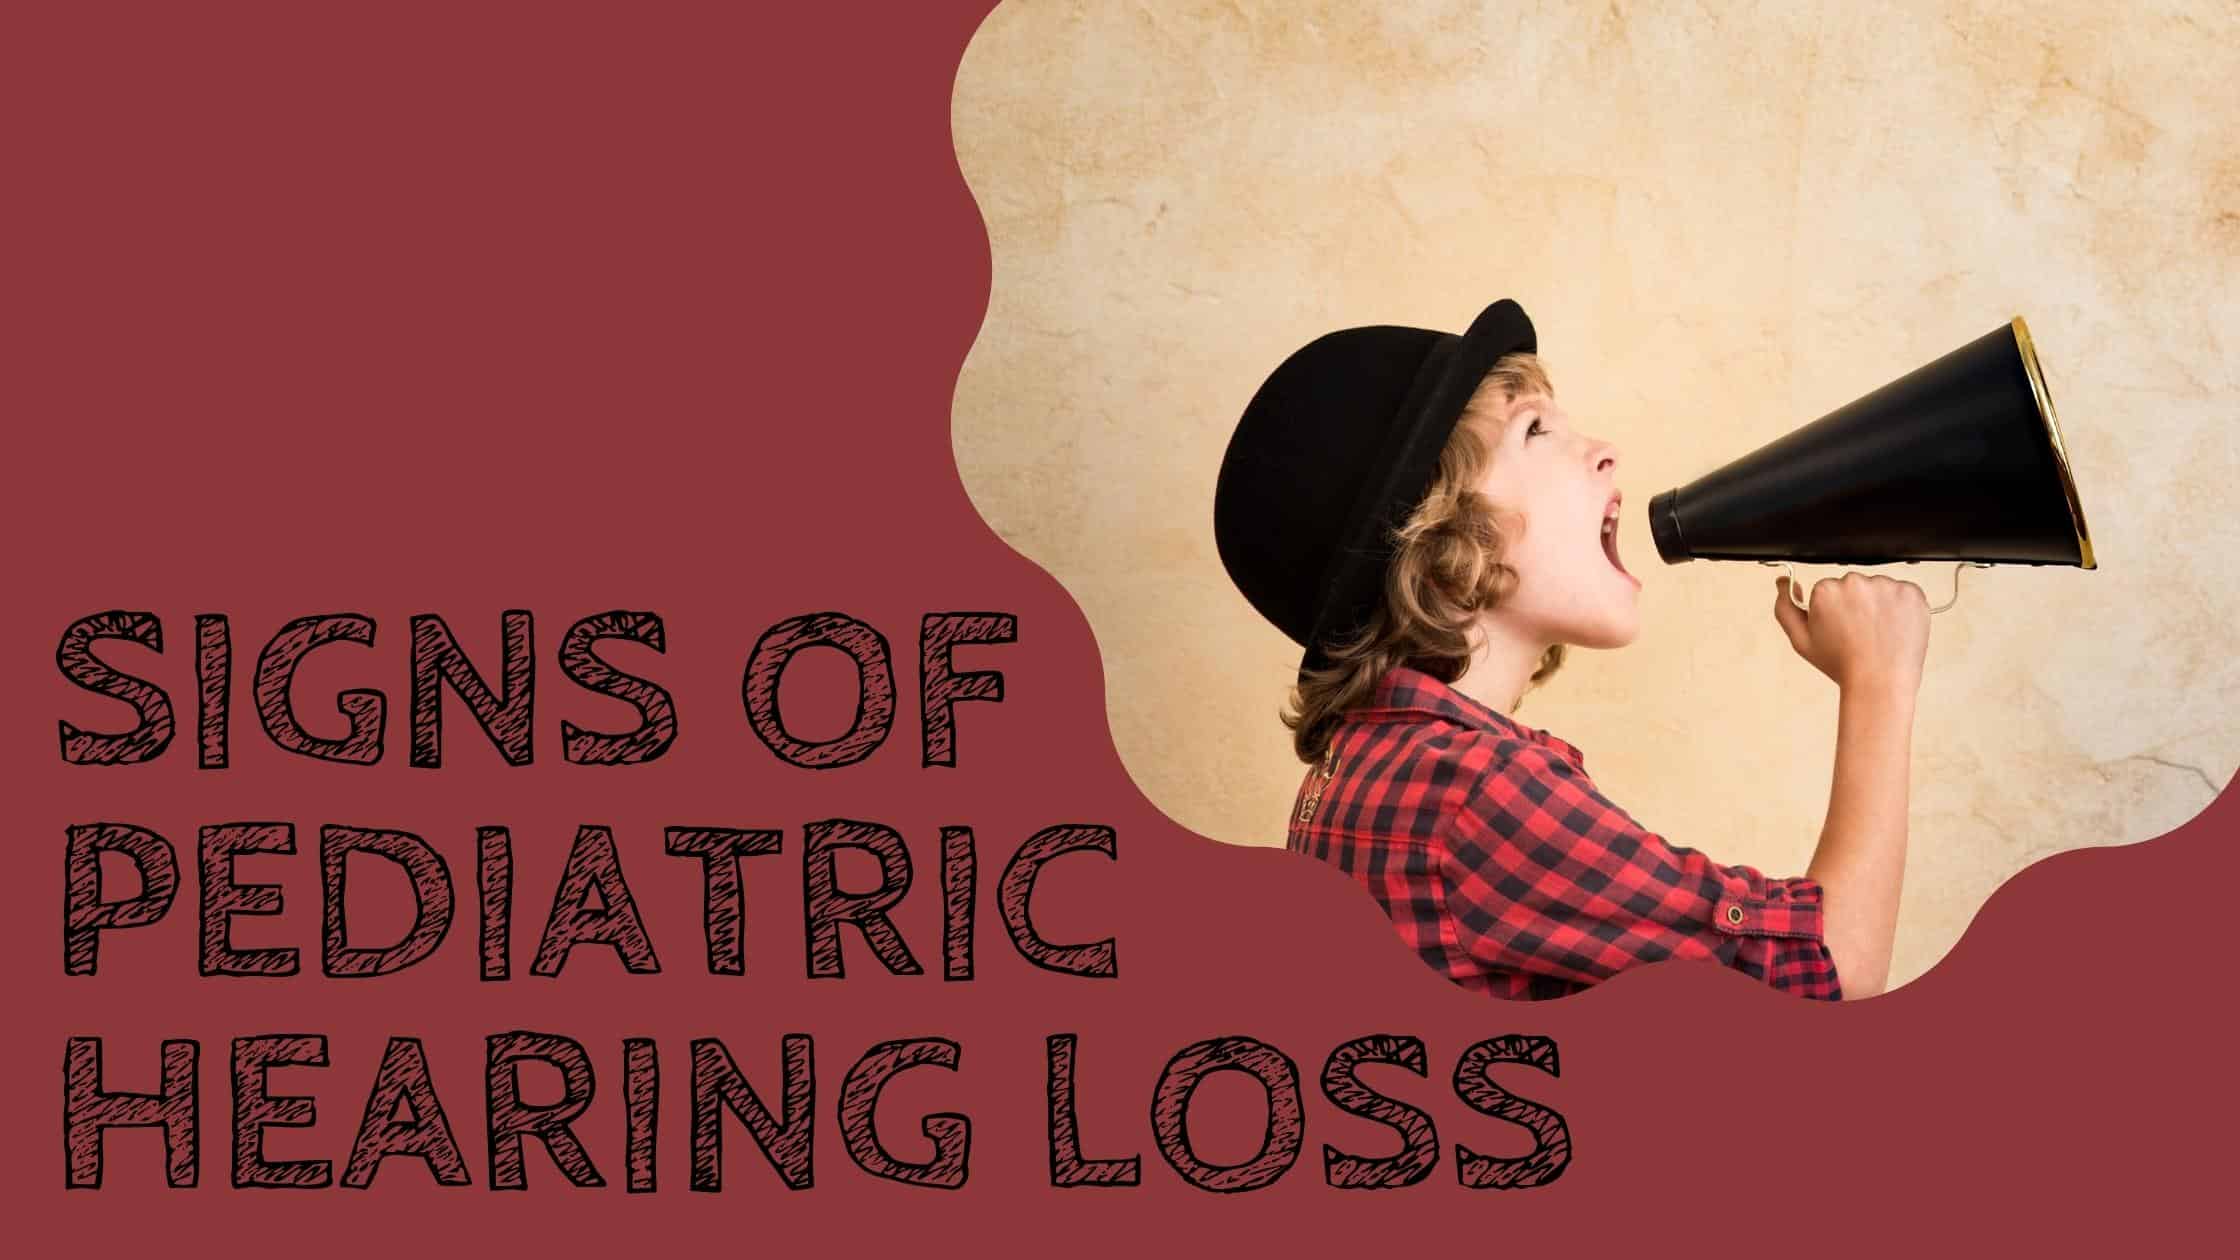 Signs of pediatric hearing loss